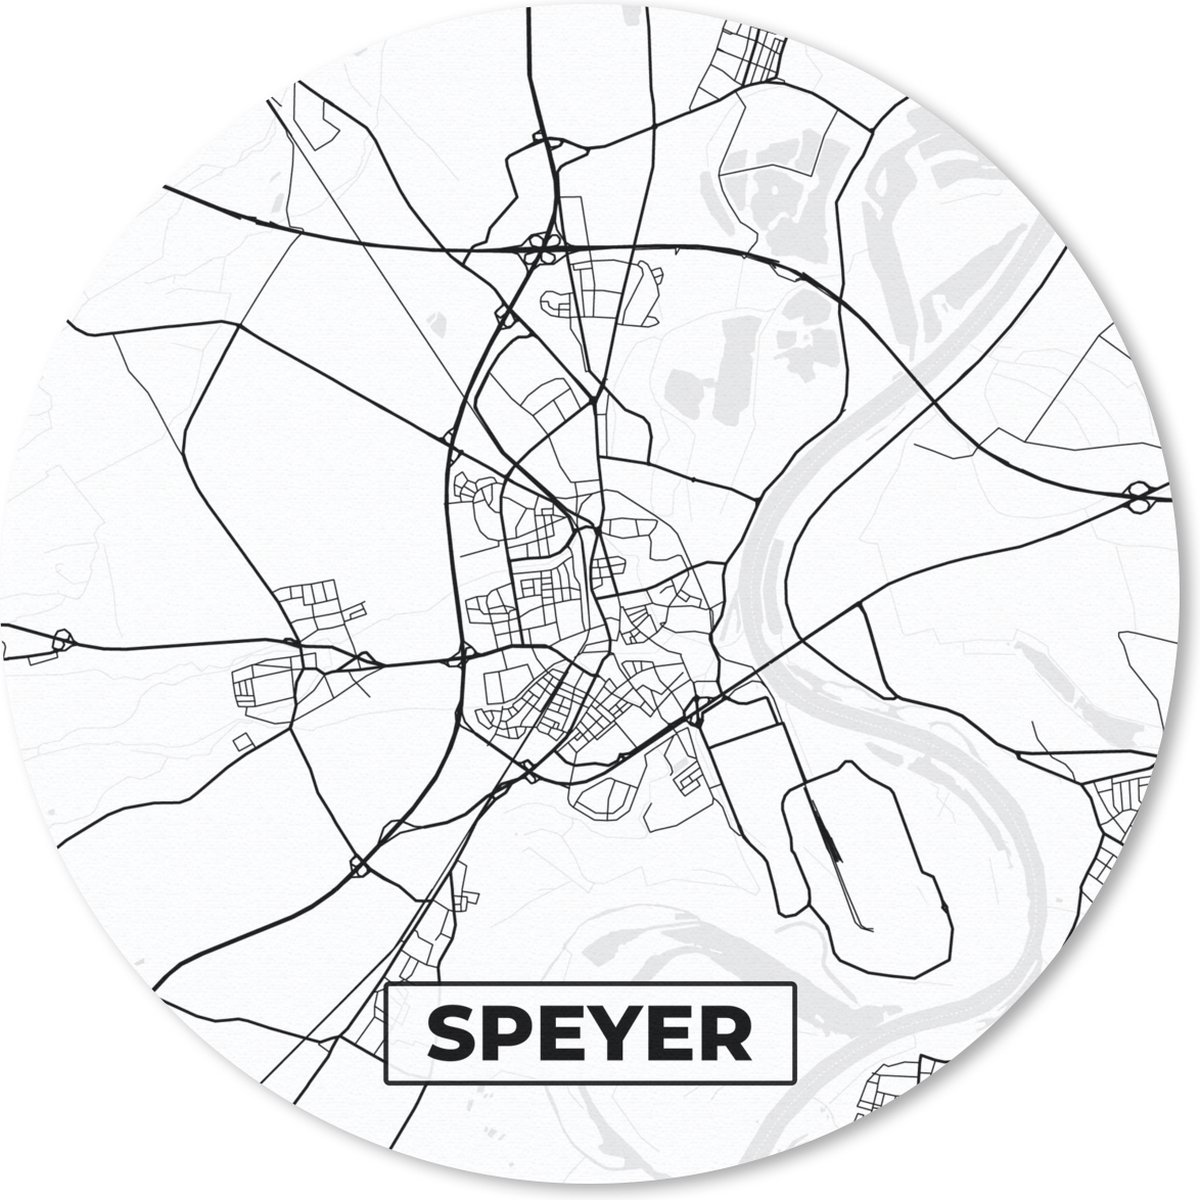 Muismat - Mousepad - Rond - Stadskaart - Speyer - Plattegrond - Kaart - 50x50 cm - Ronde muismat